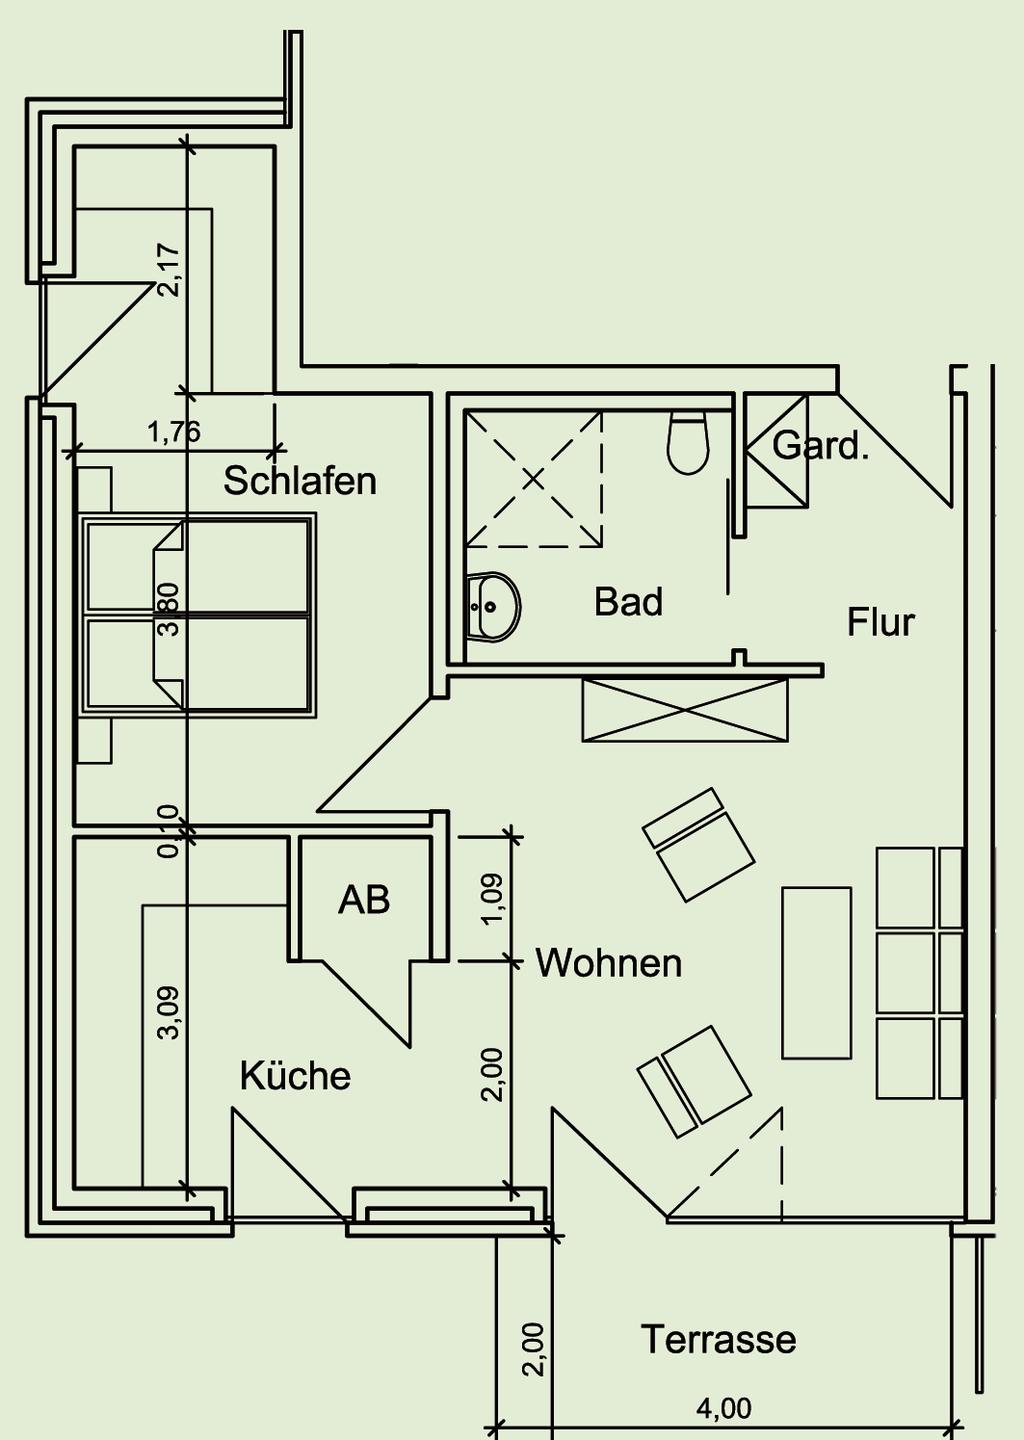 Zimmer: Schlafzimmer (15,74 m 2 ) Wohnzimmer (20,95 m 2 ) Küche (8,71 m 2 ), Bad (5,79 m 2 ), Flur (3,87 m 2 ), Abstellraum (1,22 m 2 ), Garderobe